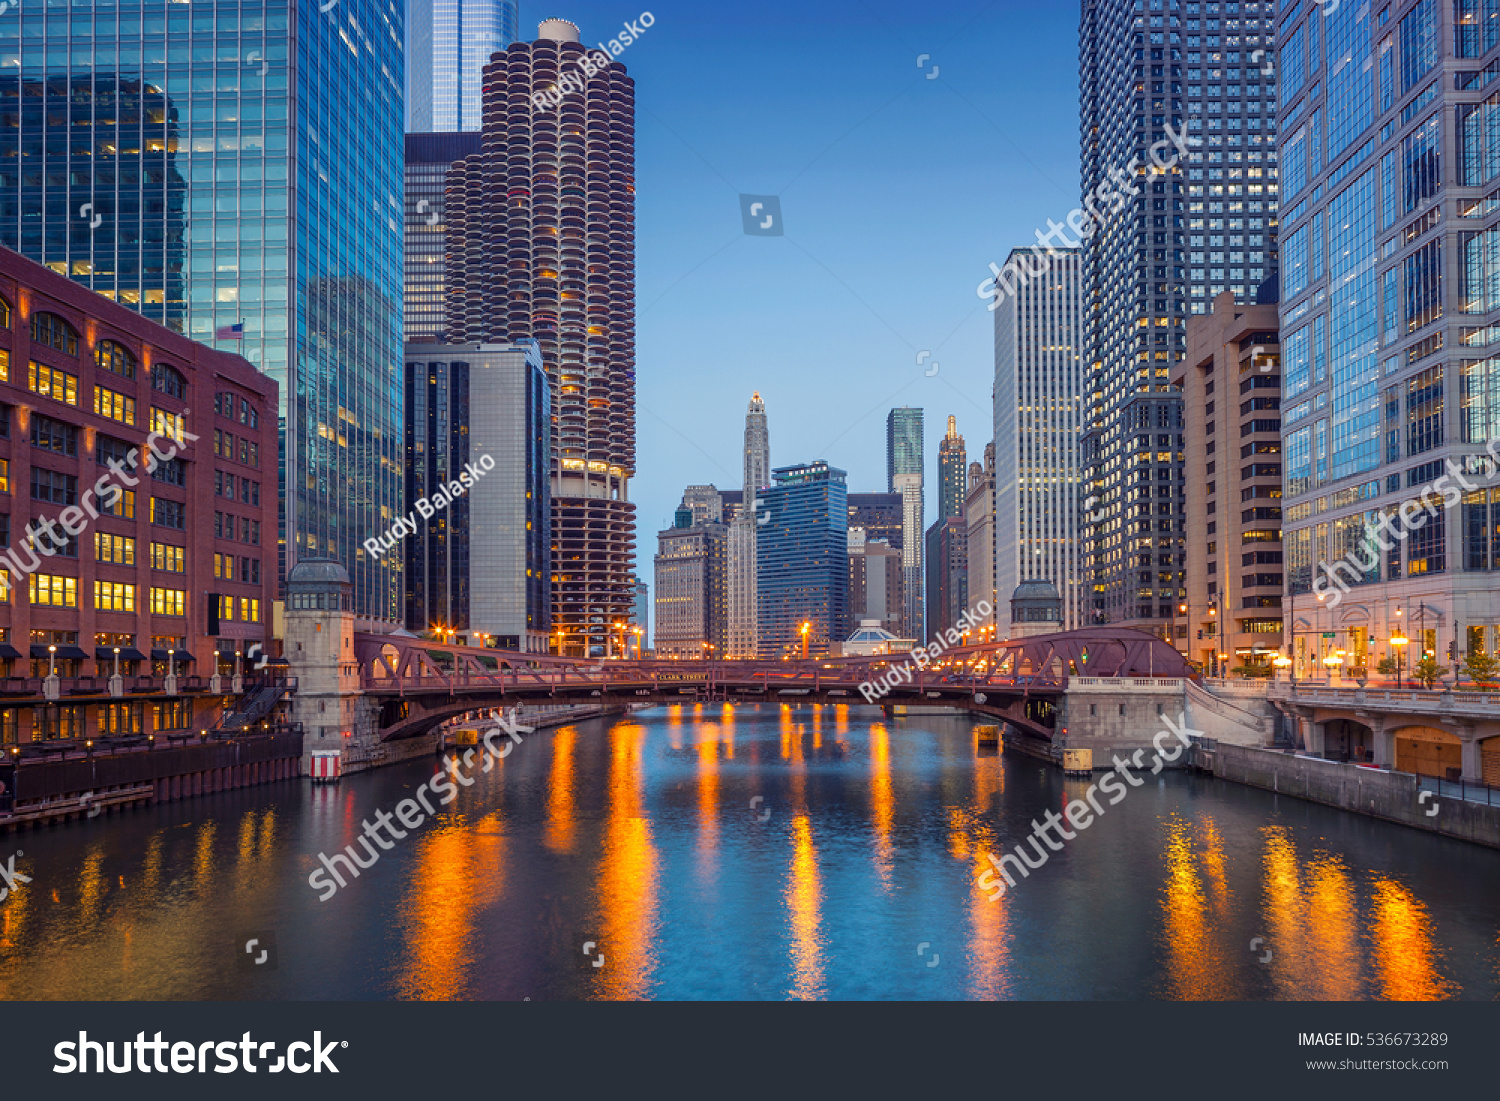 シカゴ ダウンタウン 夕暮れの青い時間にシカゴの街並みの画像 の写真素材 今すぐ編集